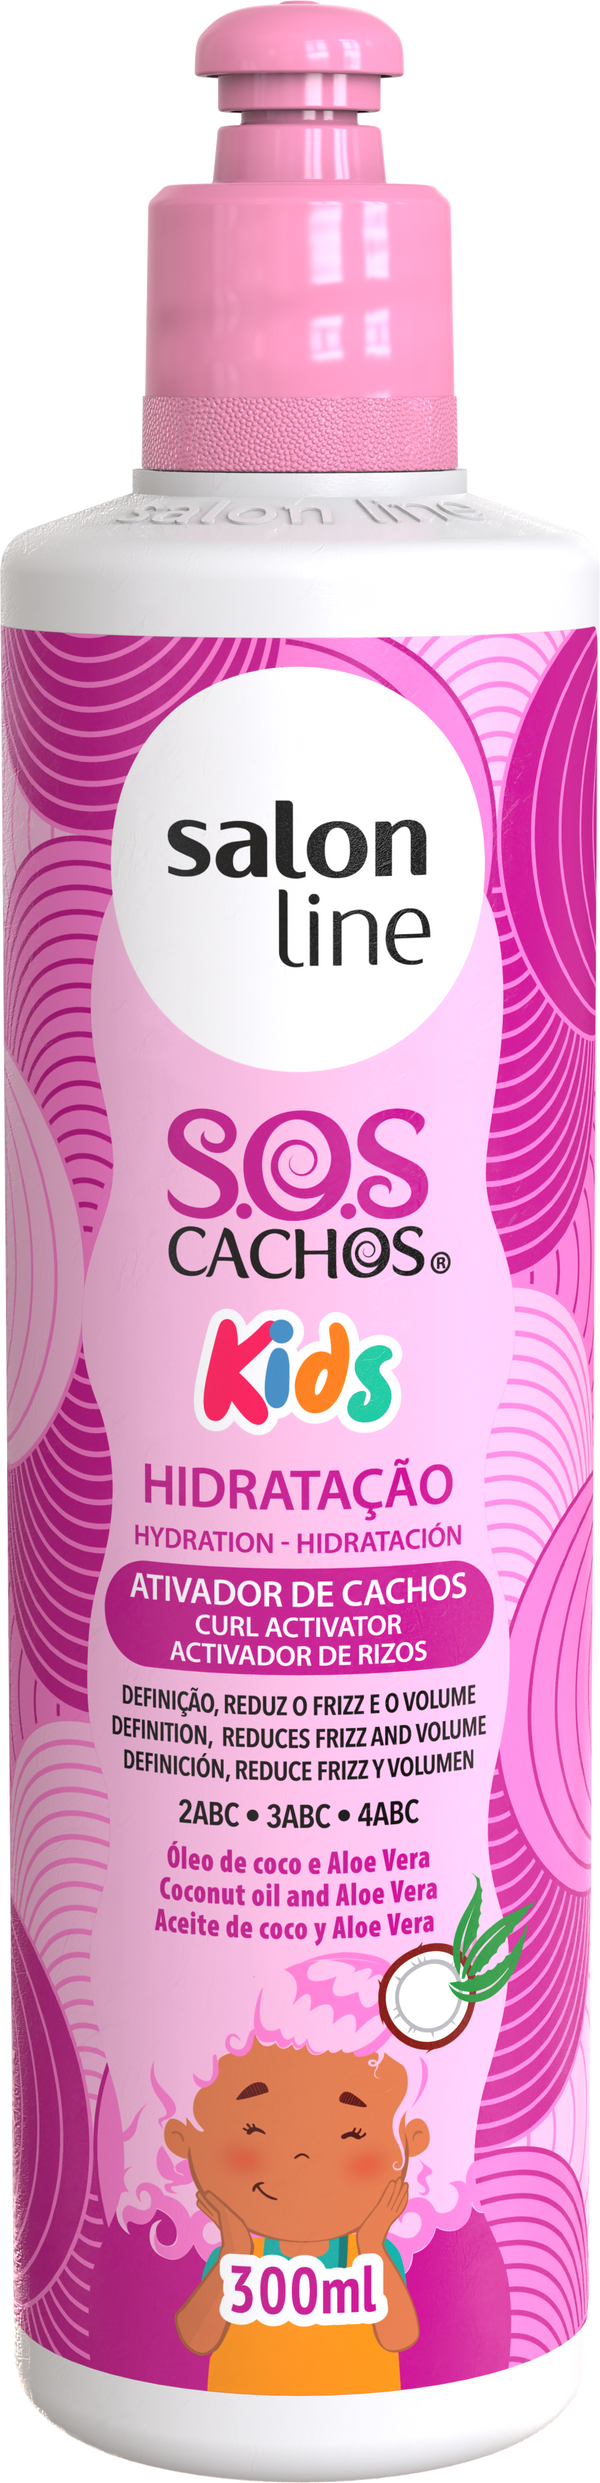 Salon Line S.O.S Cachos Kids Coconut and Aloe Vera Oil Curl Activator 300ml Salon Line